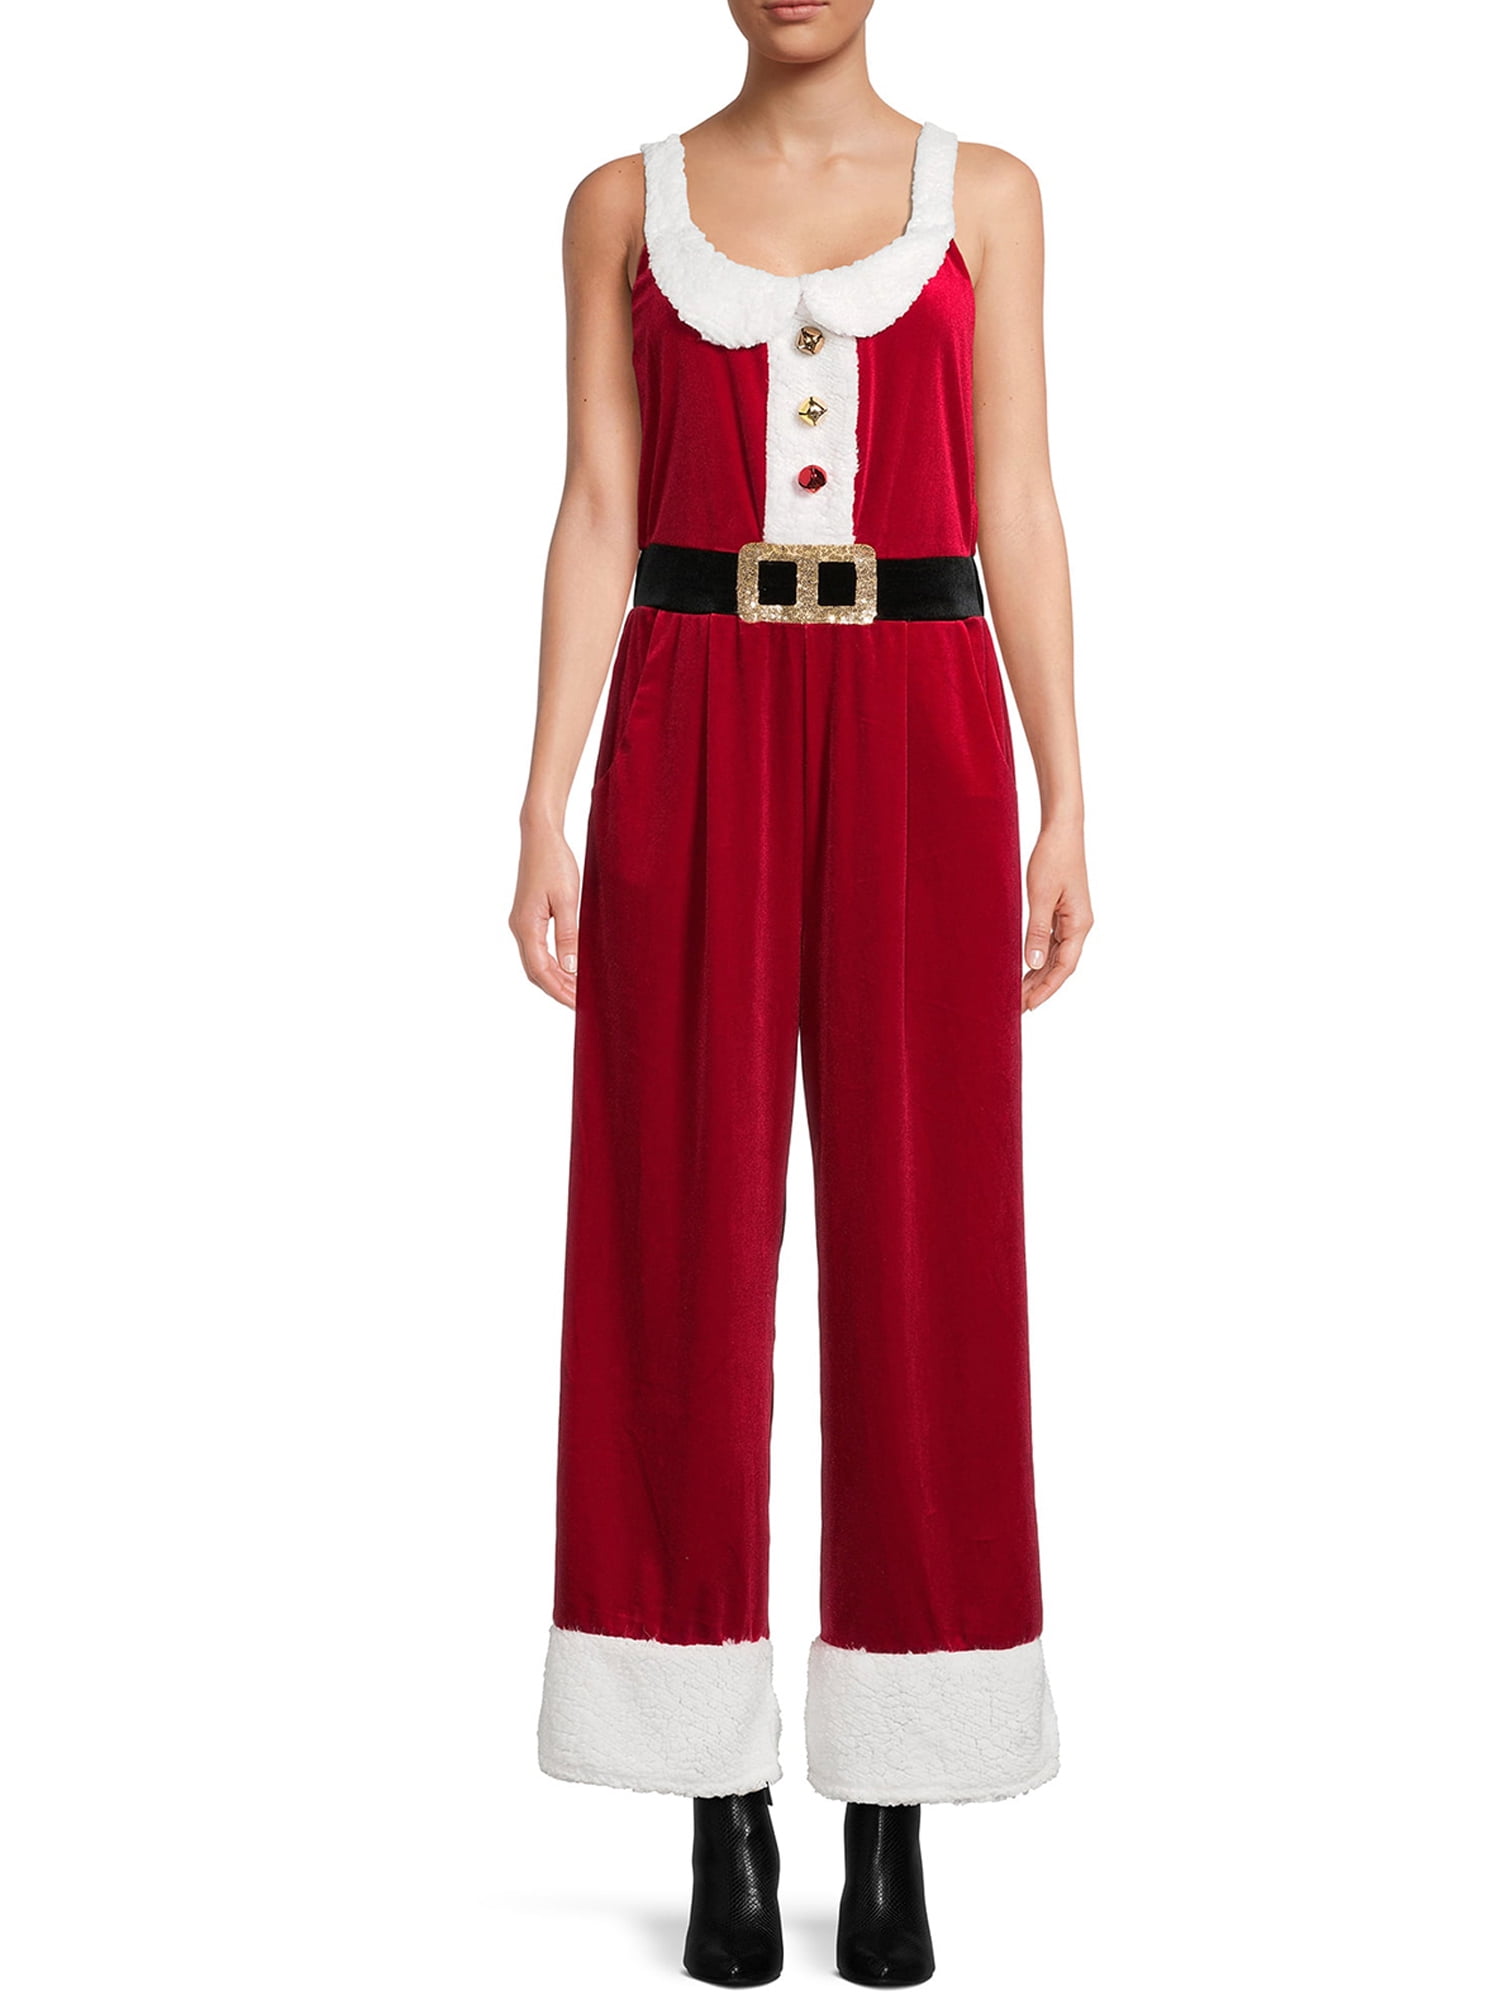 Wallarenear Women Christmas Overalls Velvet Wide Leg Romper Pants Santa ...